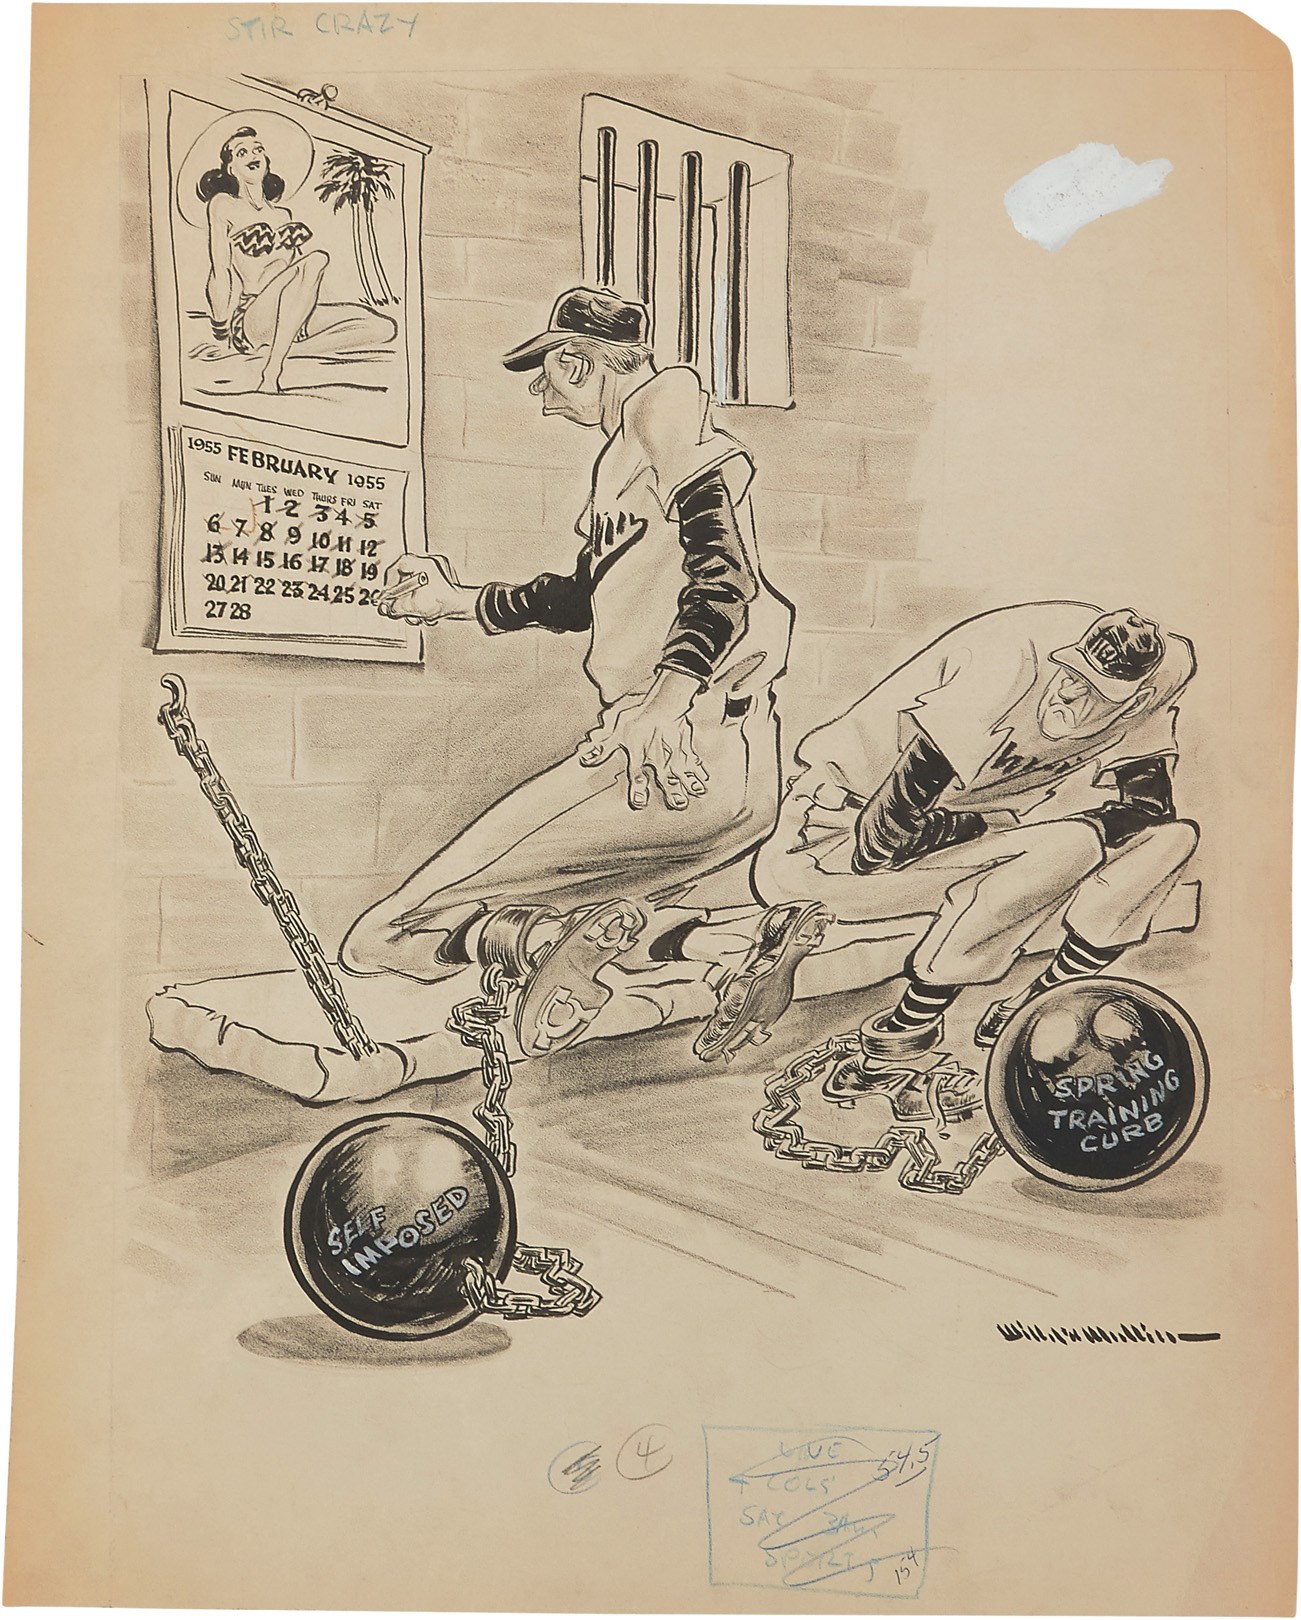 - 1955 Sporting News Original Art by Willard Mullin - Betty Page, Prison & Baseball